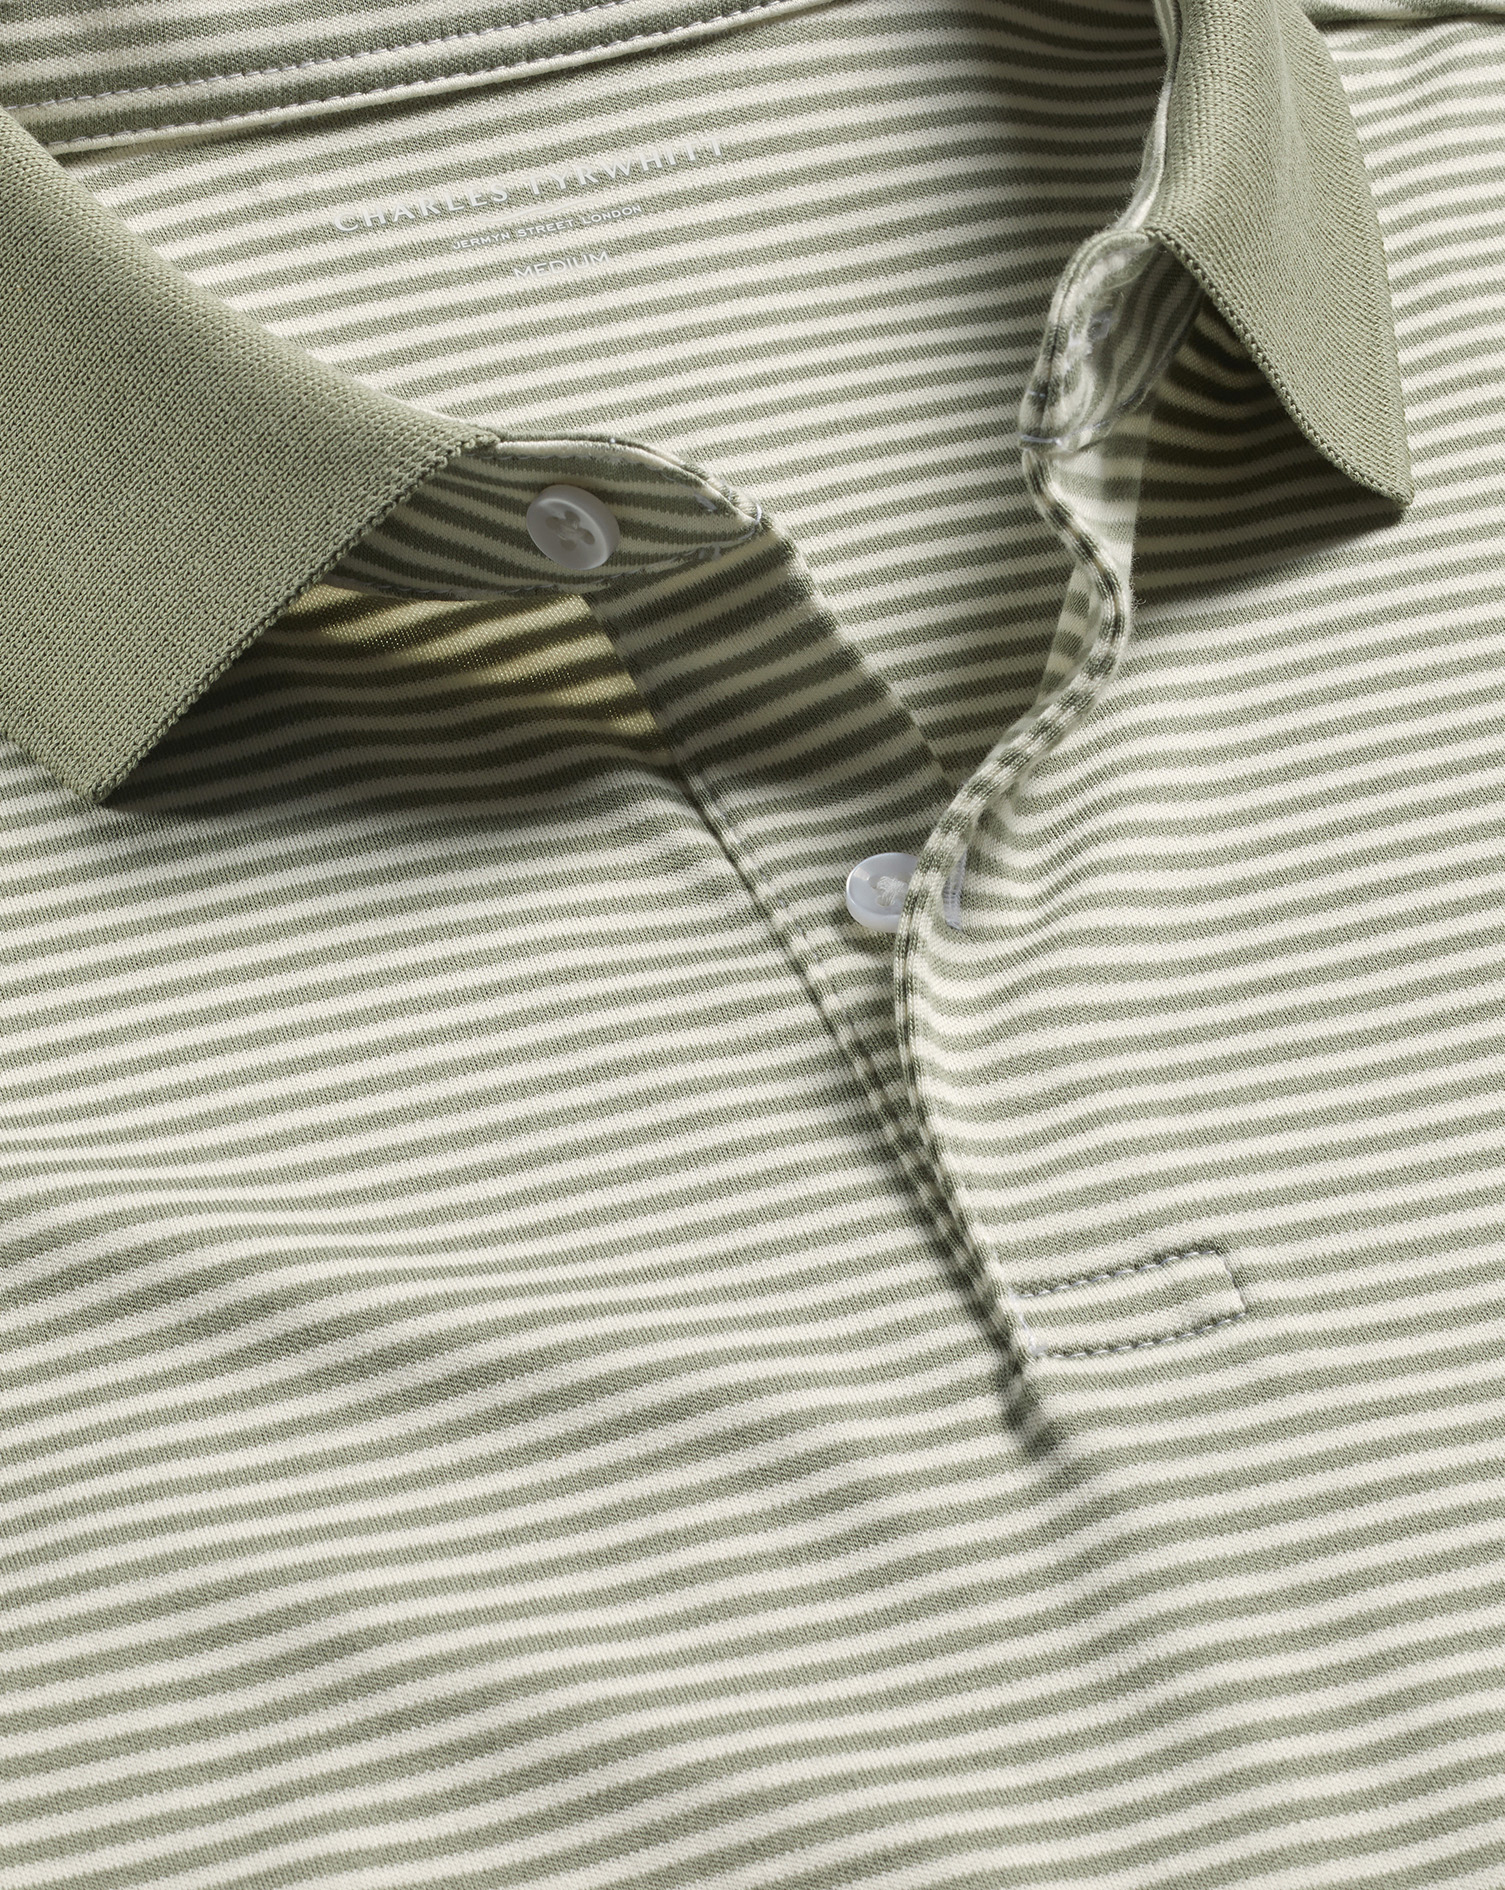 Men's Charles Tyrwhitt Fine Stripe Jersey Polo Shirt - Sage Green & Ecru Size XXL Cotton
